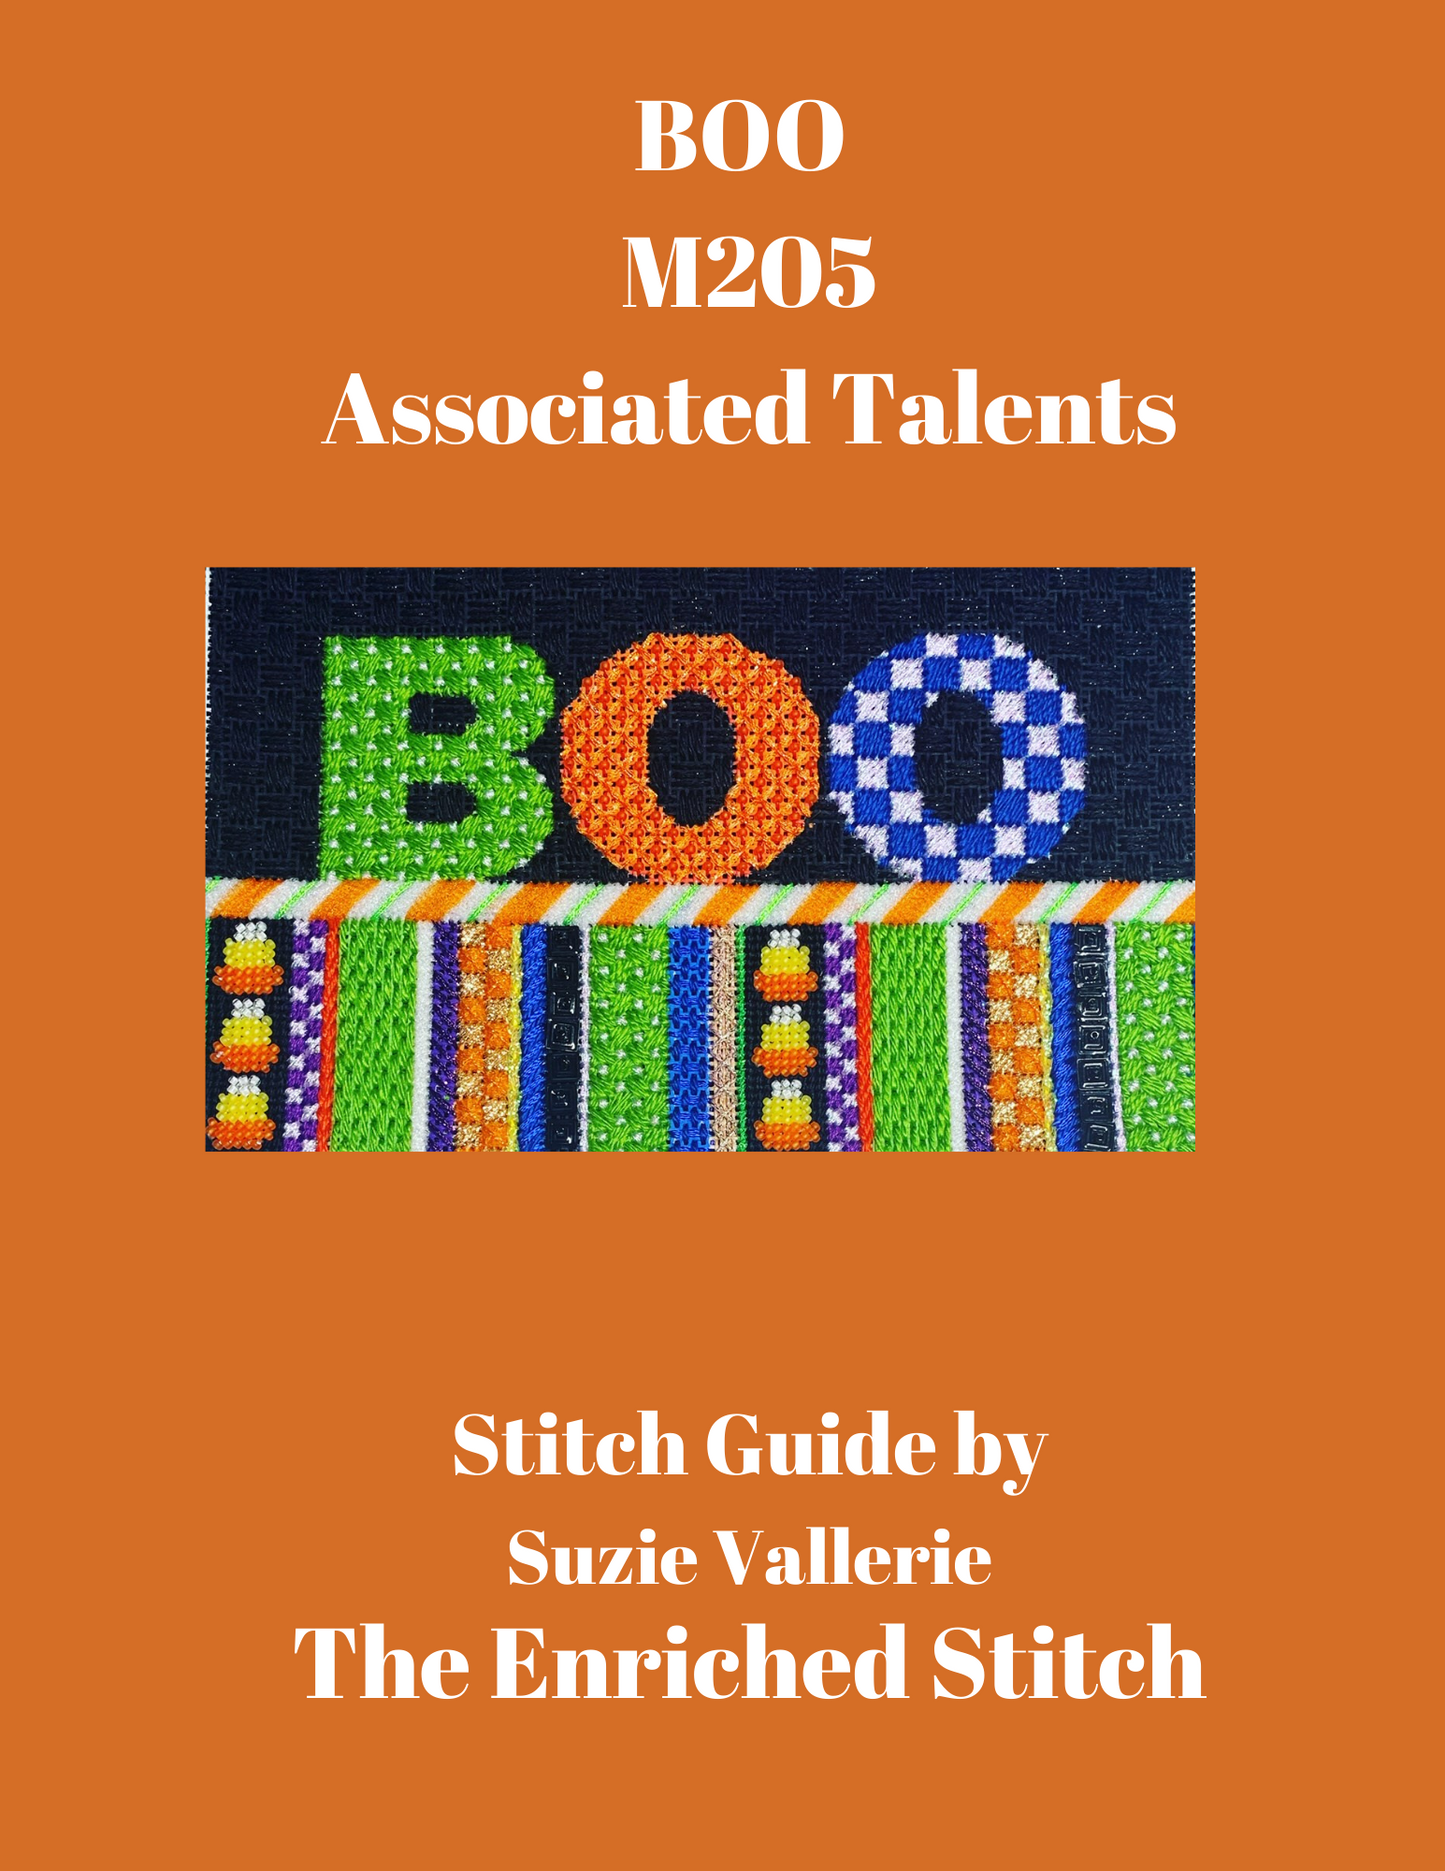 BOO Stitch Guide